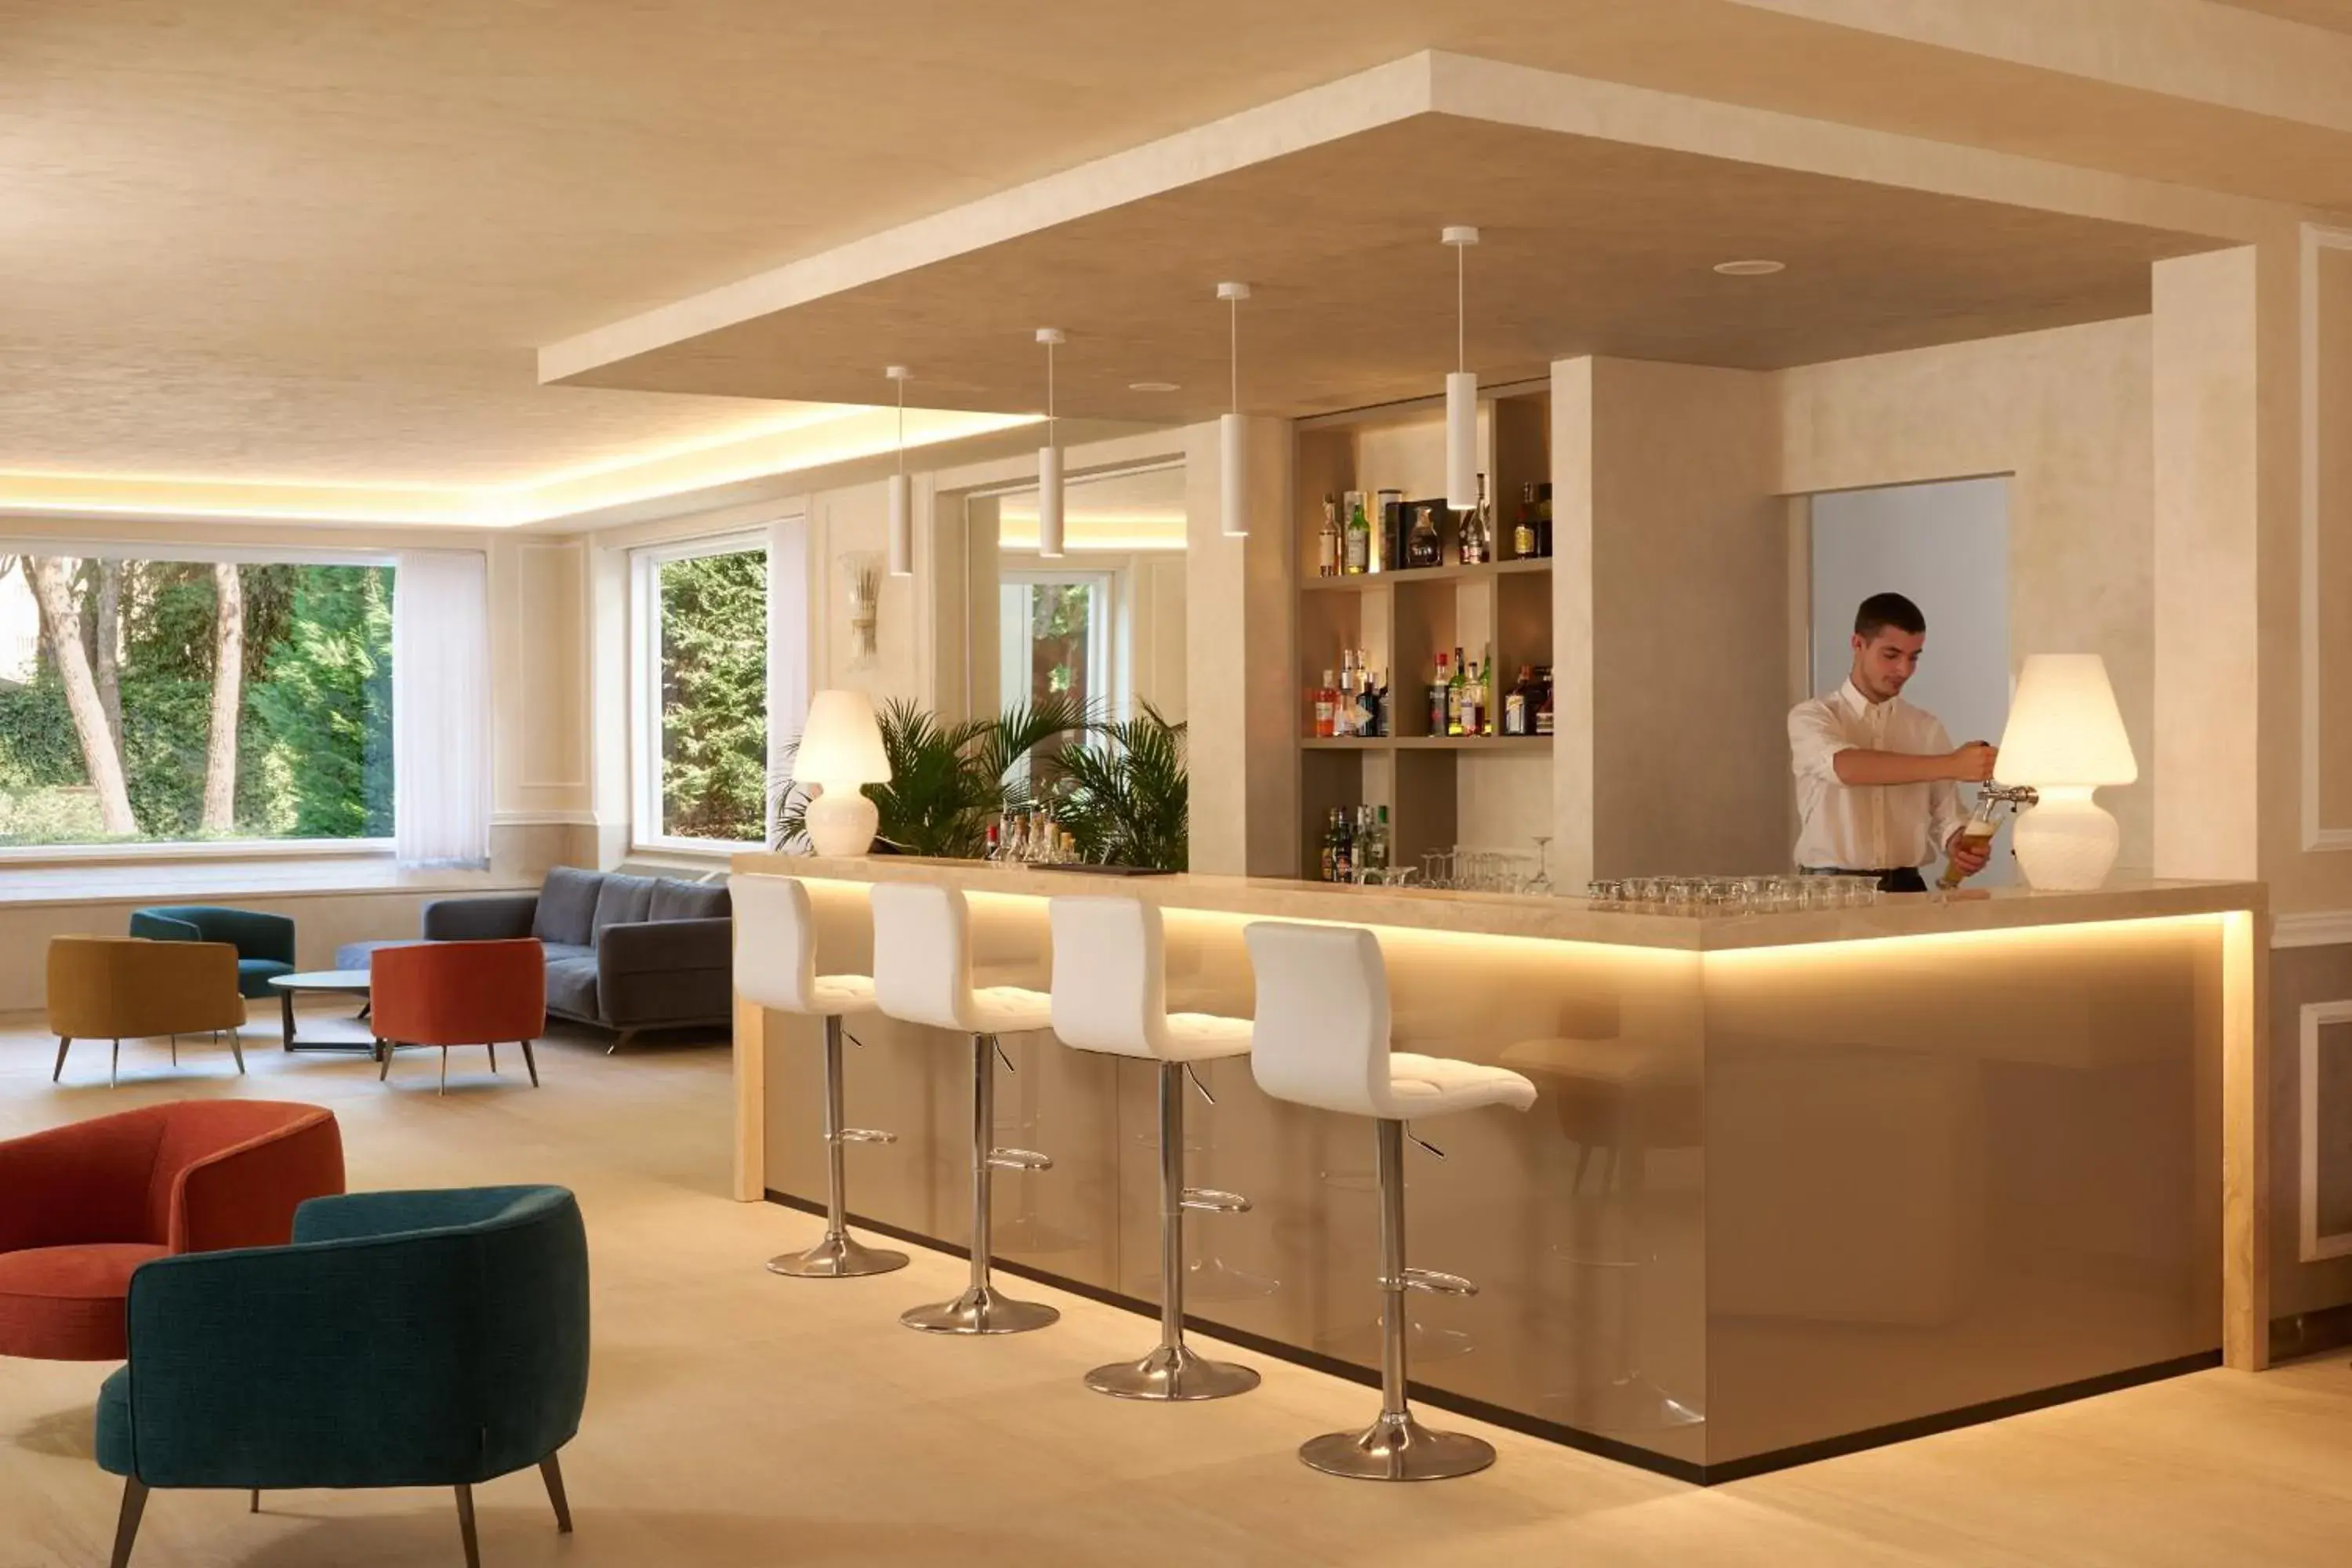 Lobby or reception, Lobby/Reception in Hotel Gallia & Resort